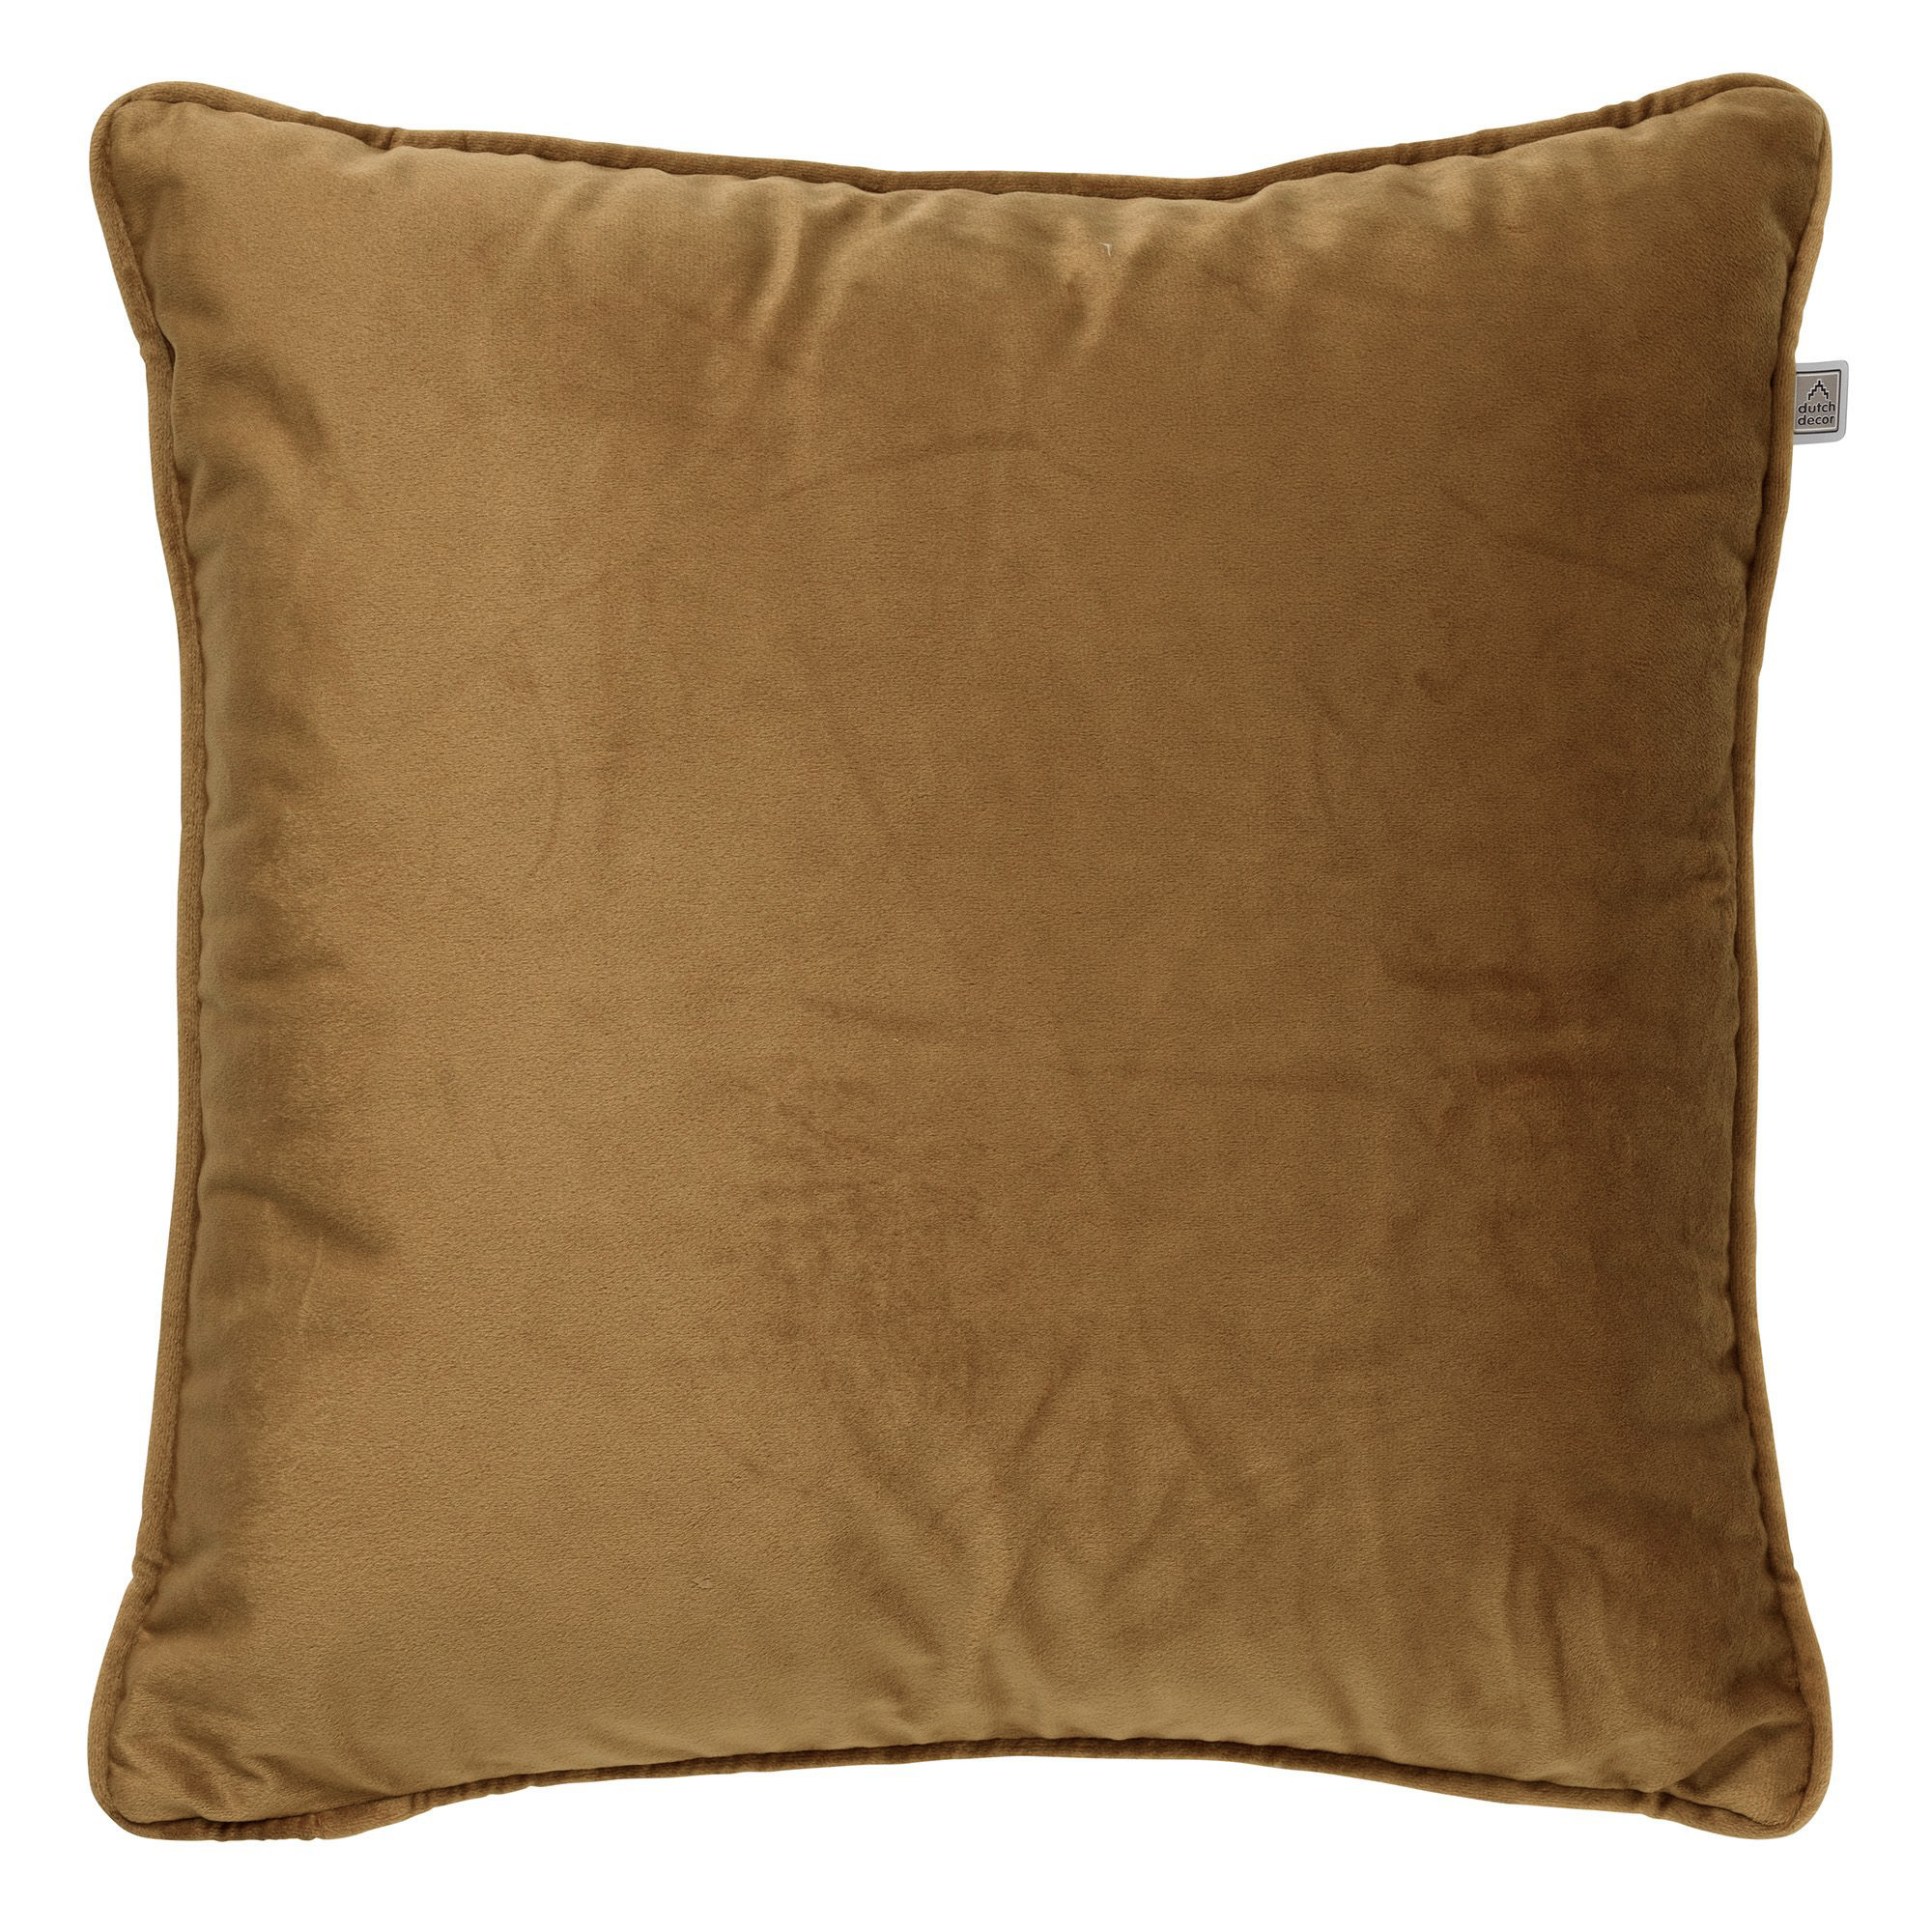 FINN - Cushion 60x60 cm Tobacco Brown - brown